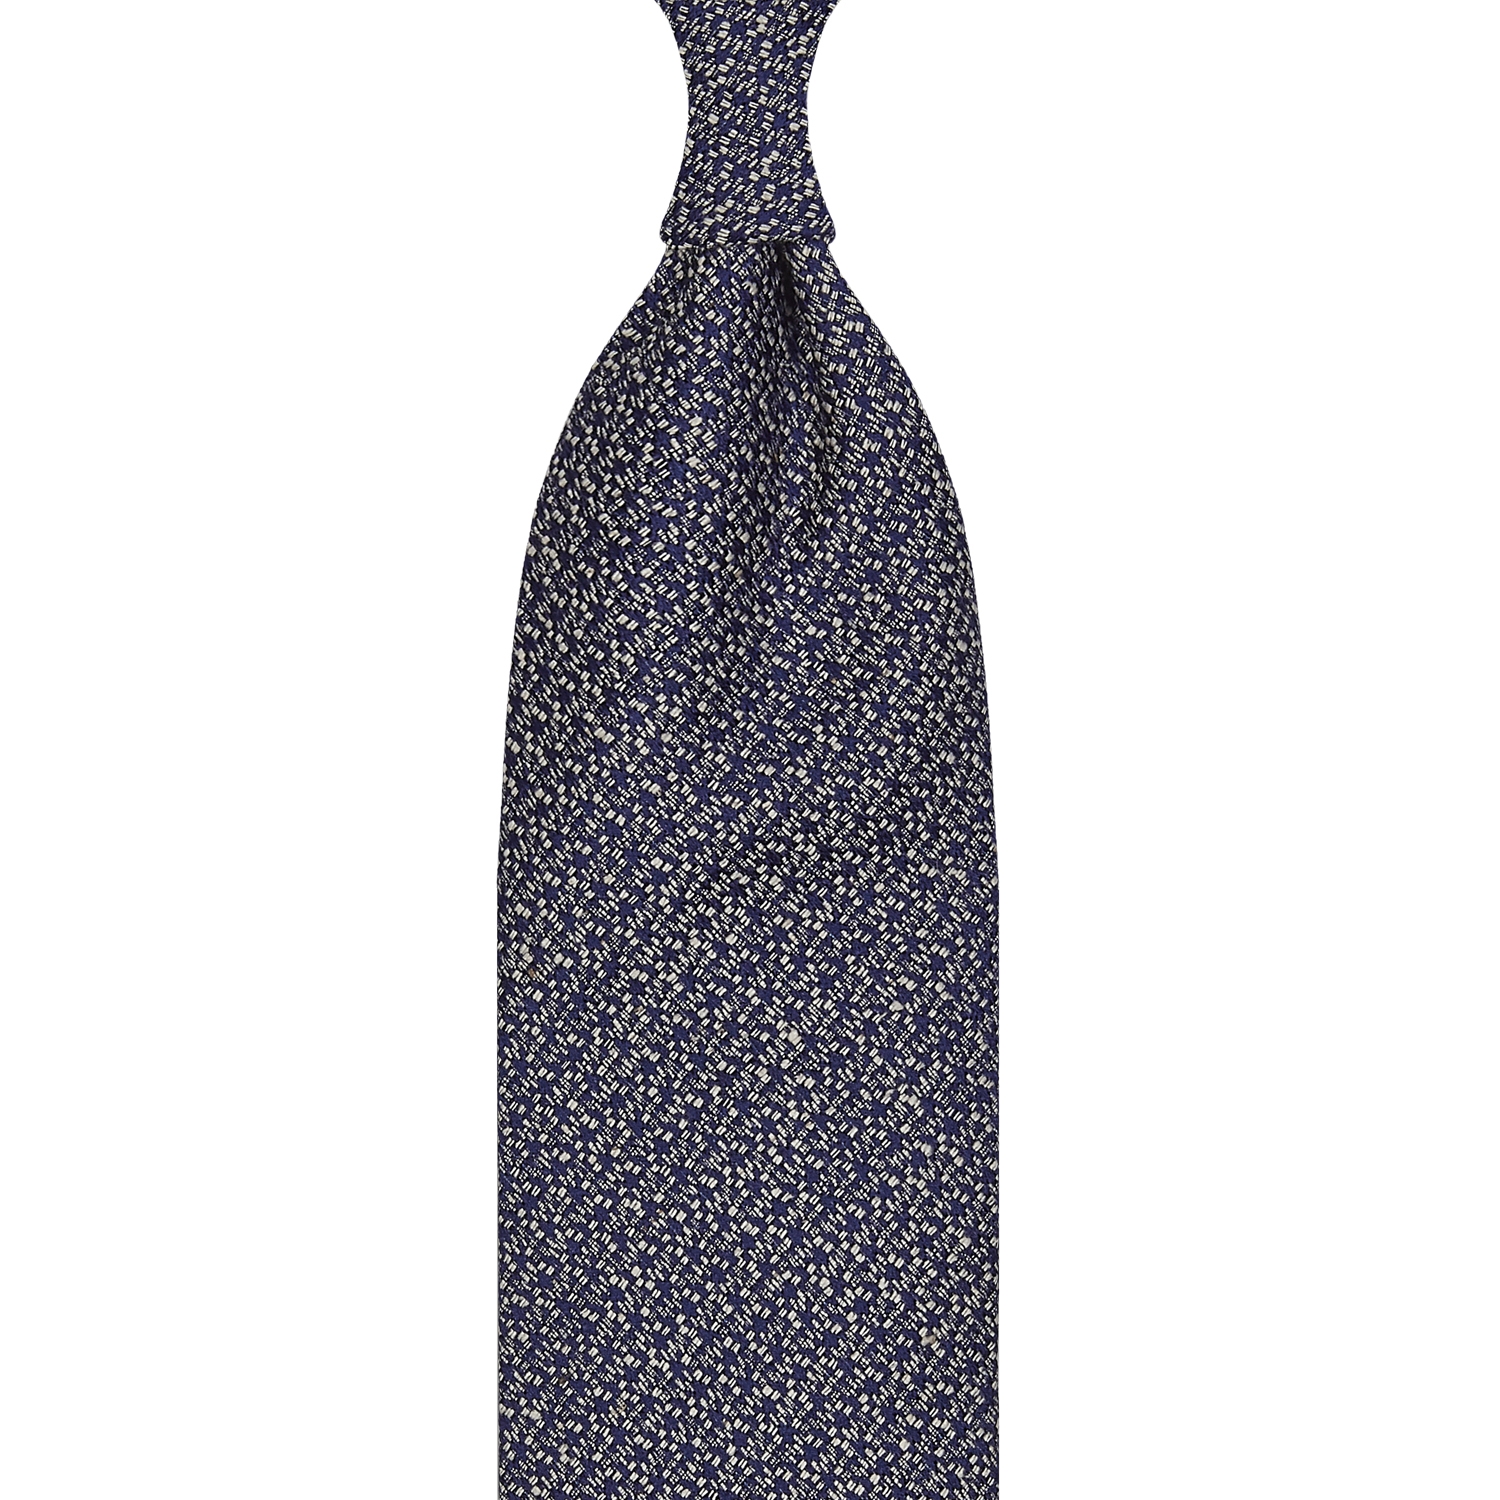 cravate classique non doublée en soie Tussah - bleu marine / blanc moucheté